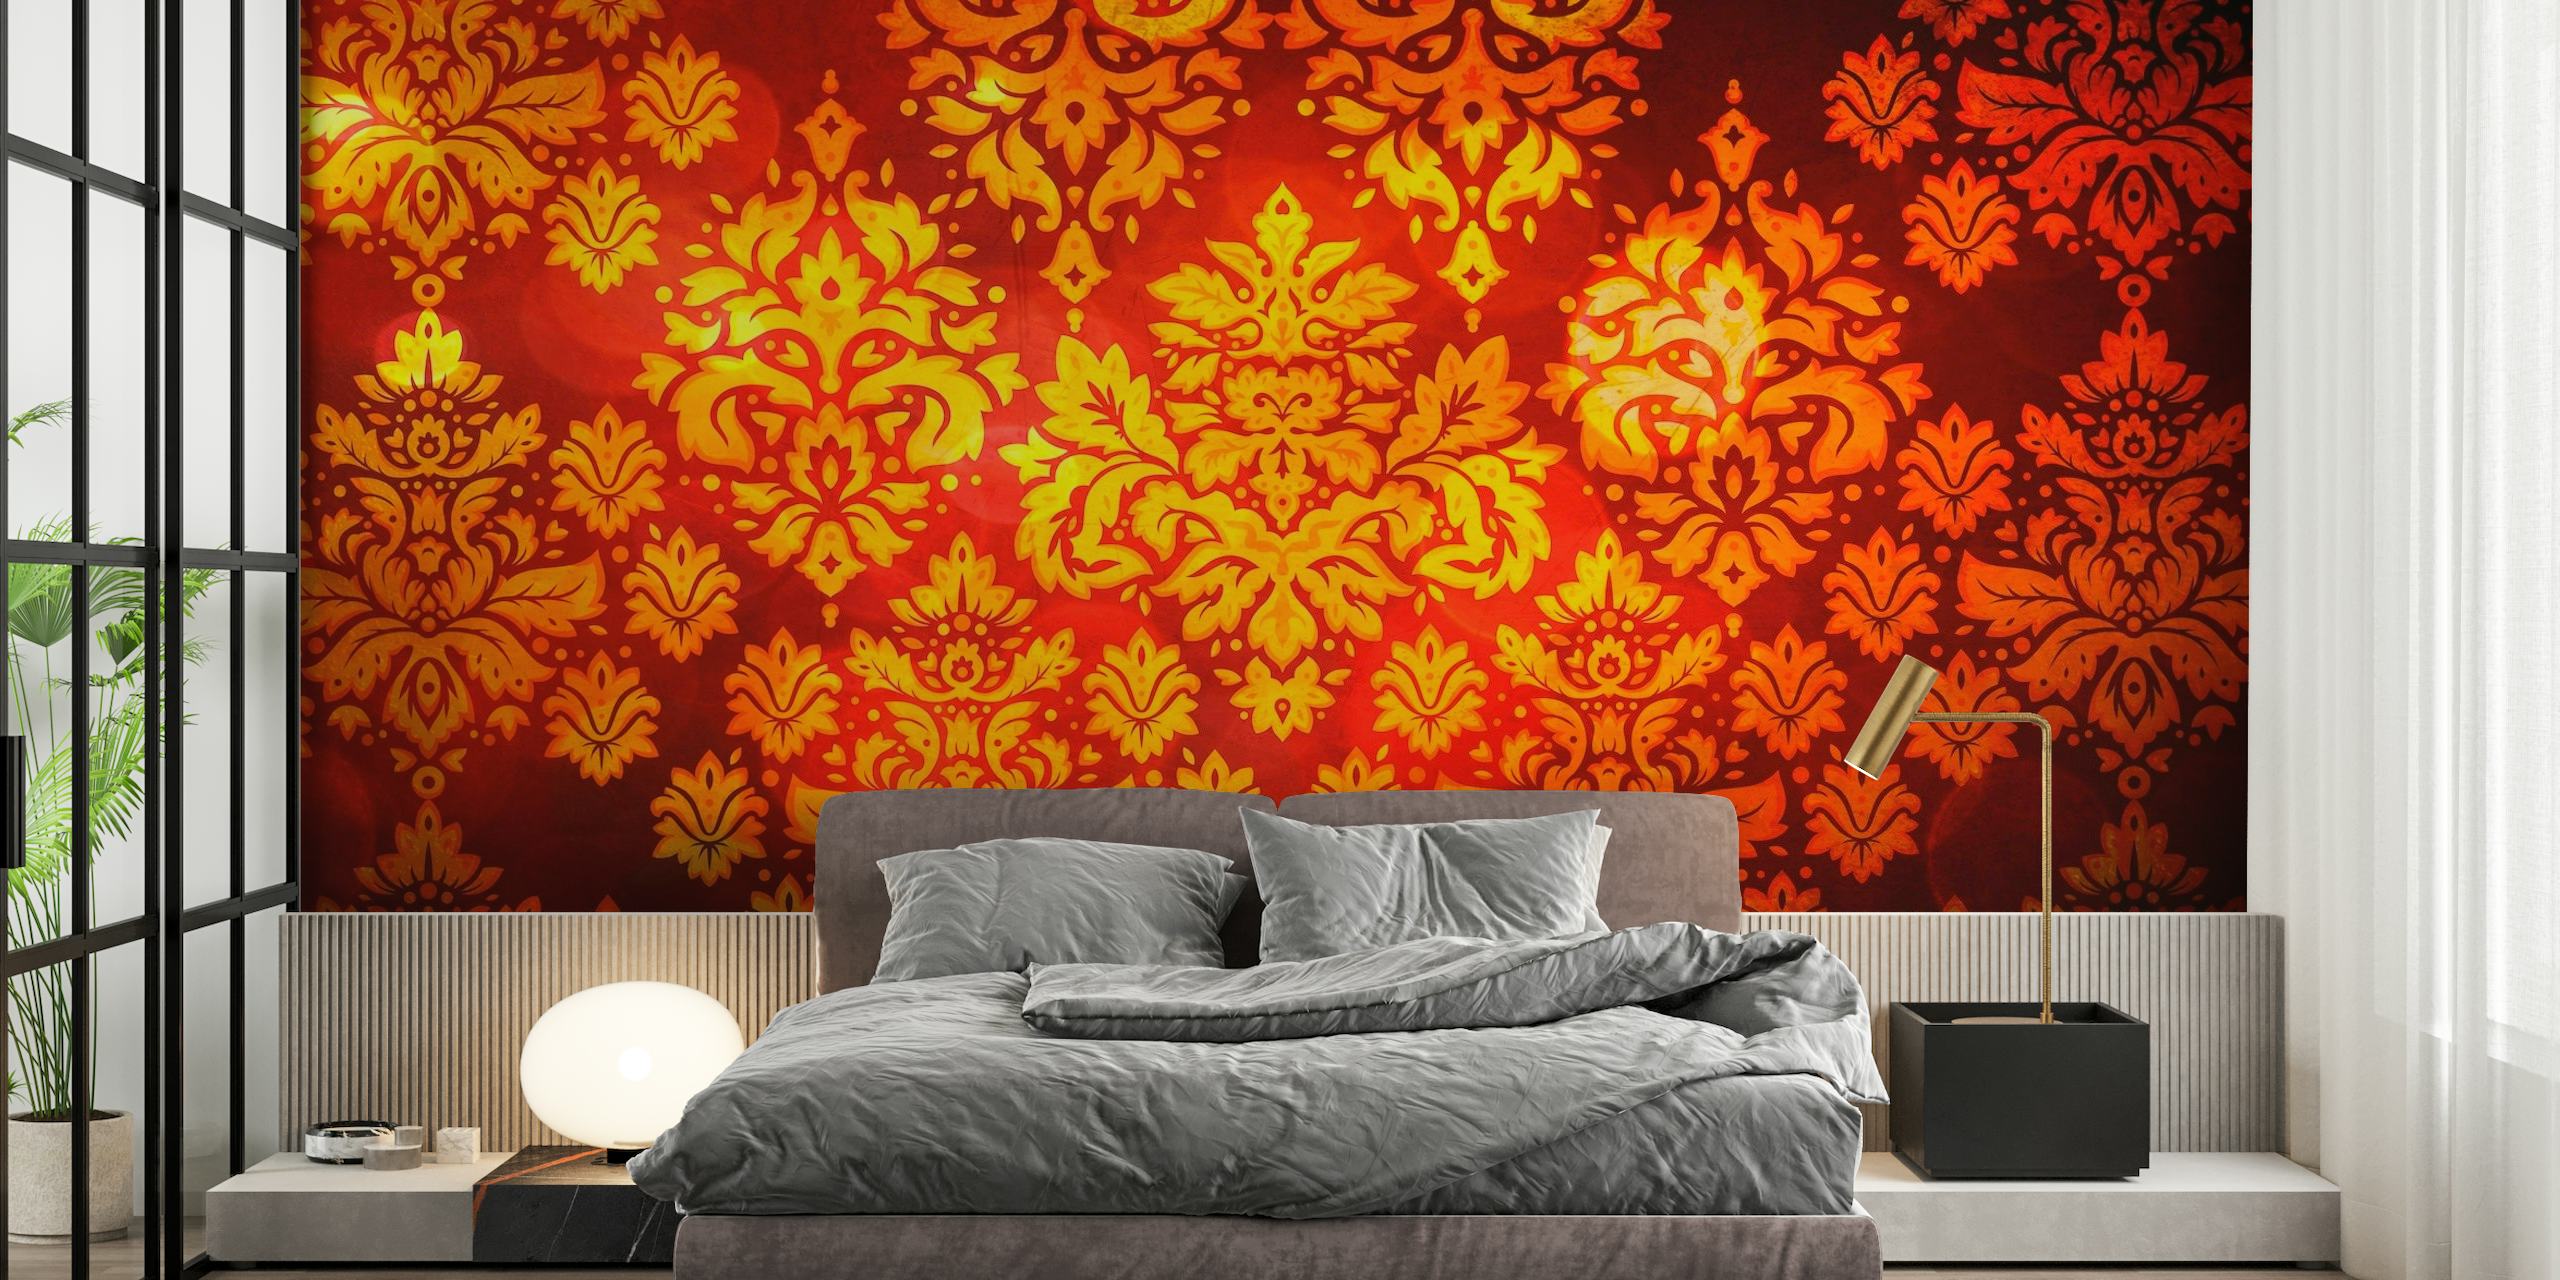 Elegante fotomural vinílico de parede com padrão de damasco vermelho e dourado para uma decoração interior luxuosa